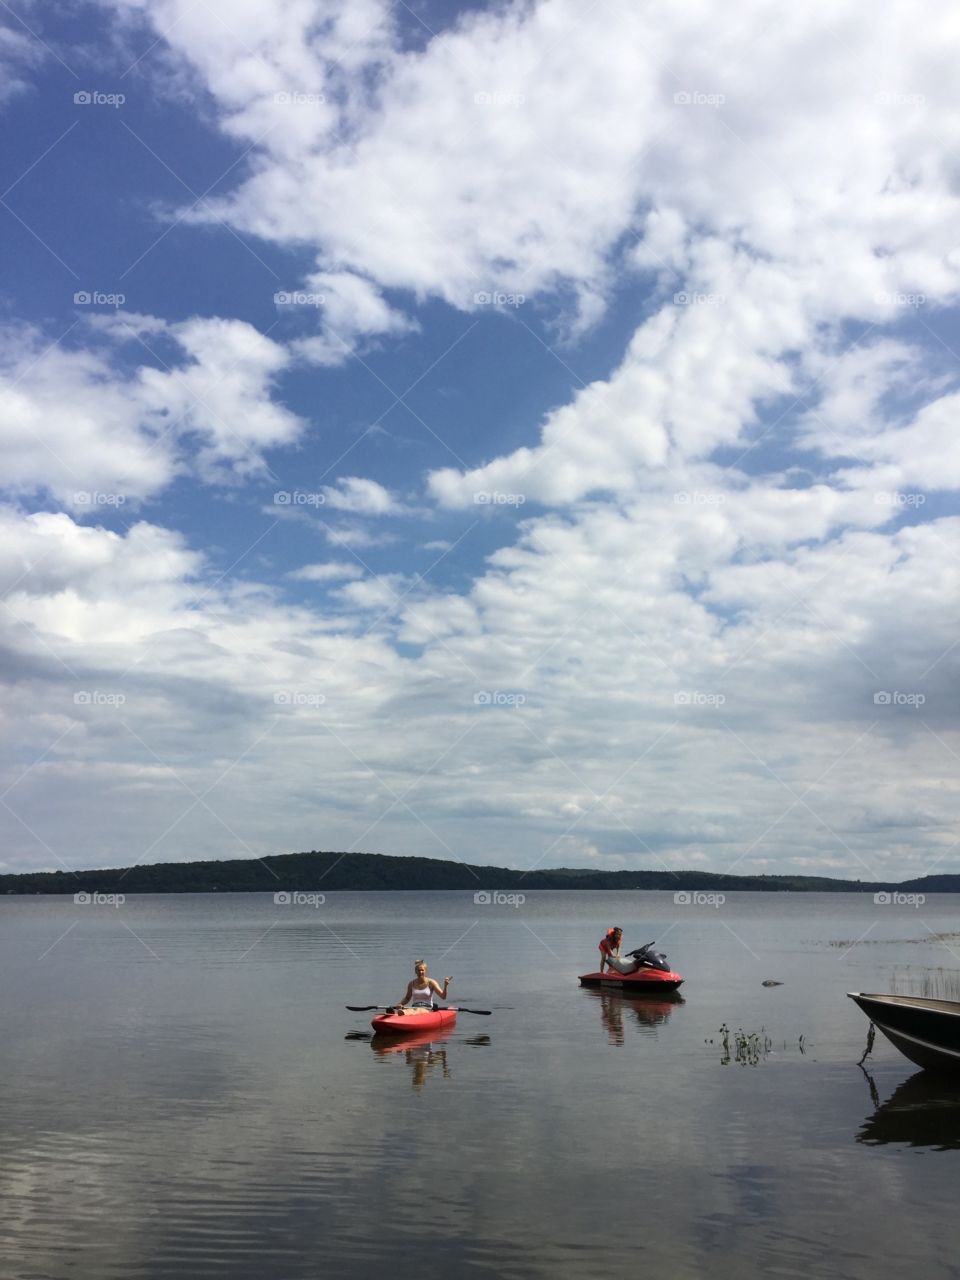 Lake Bernard